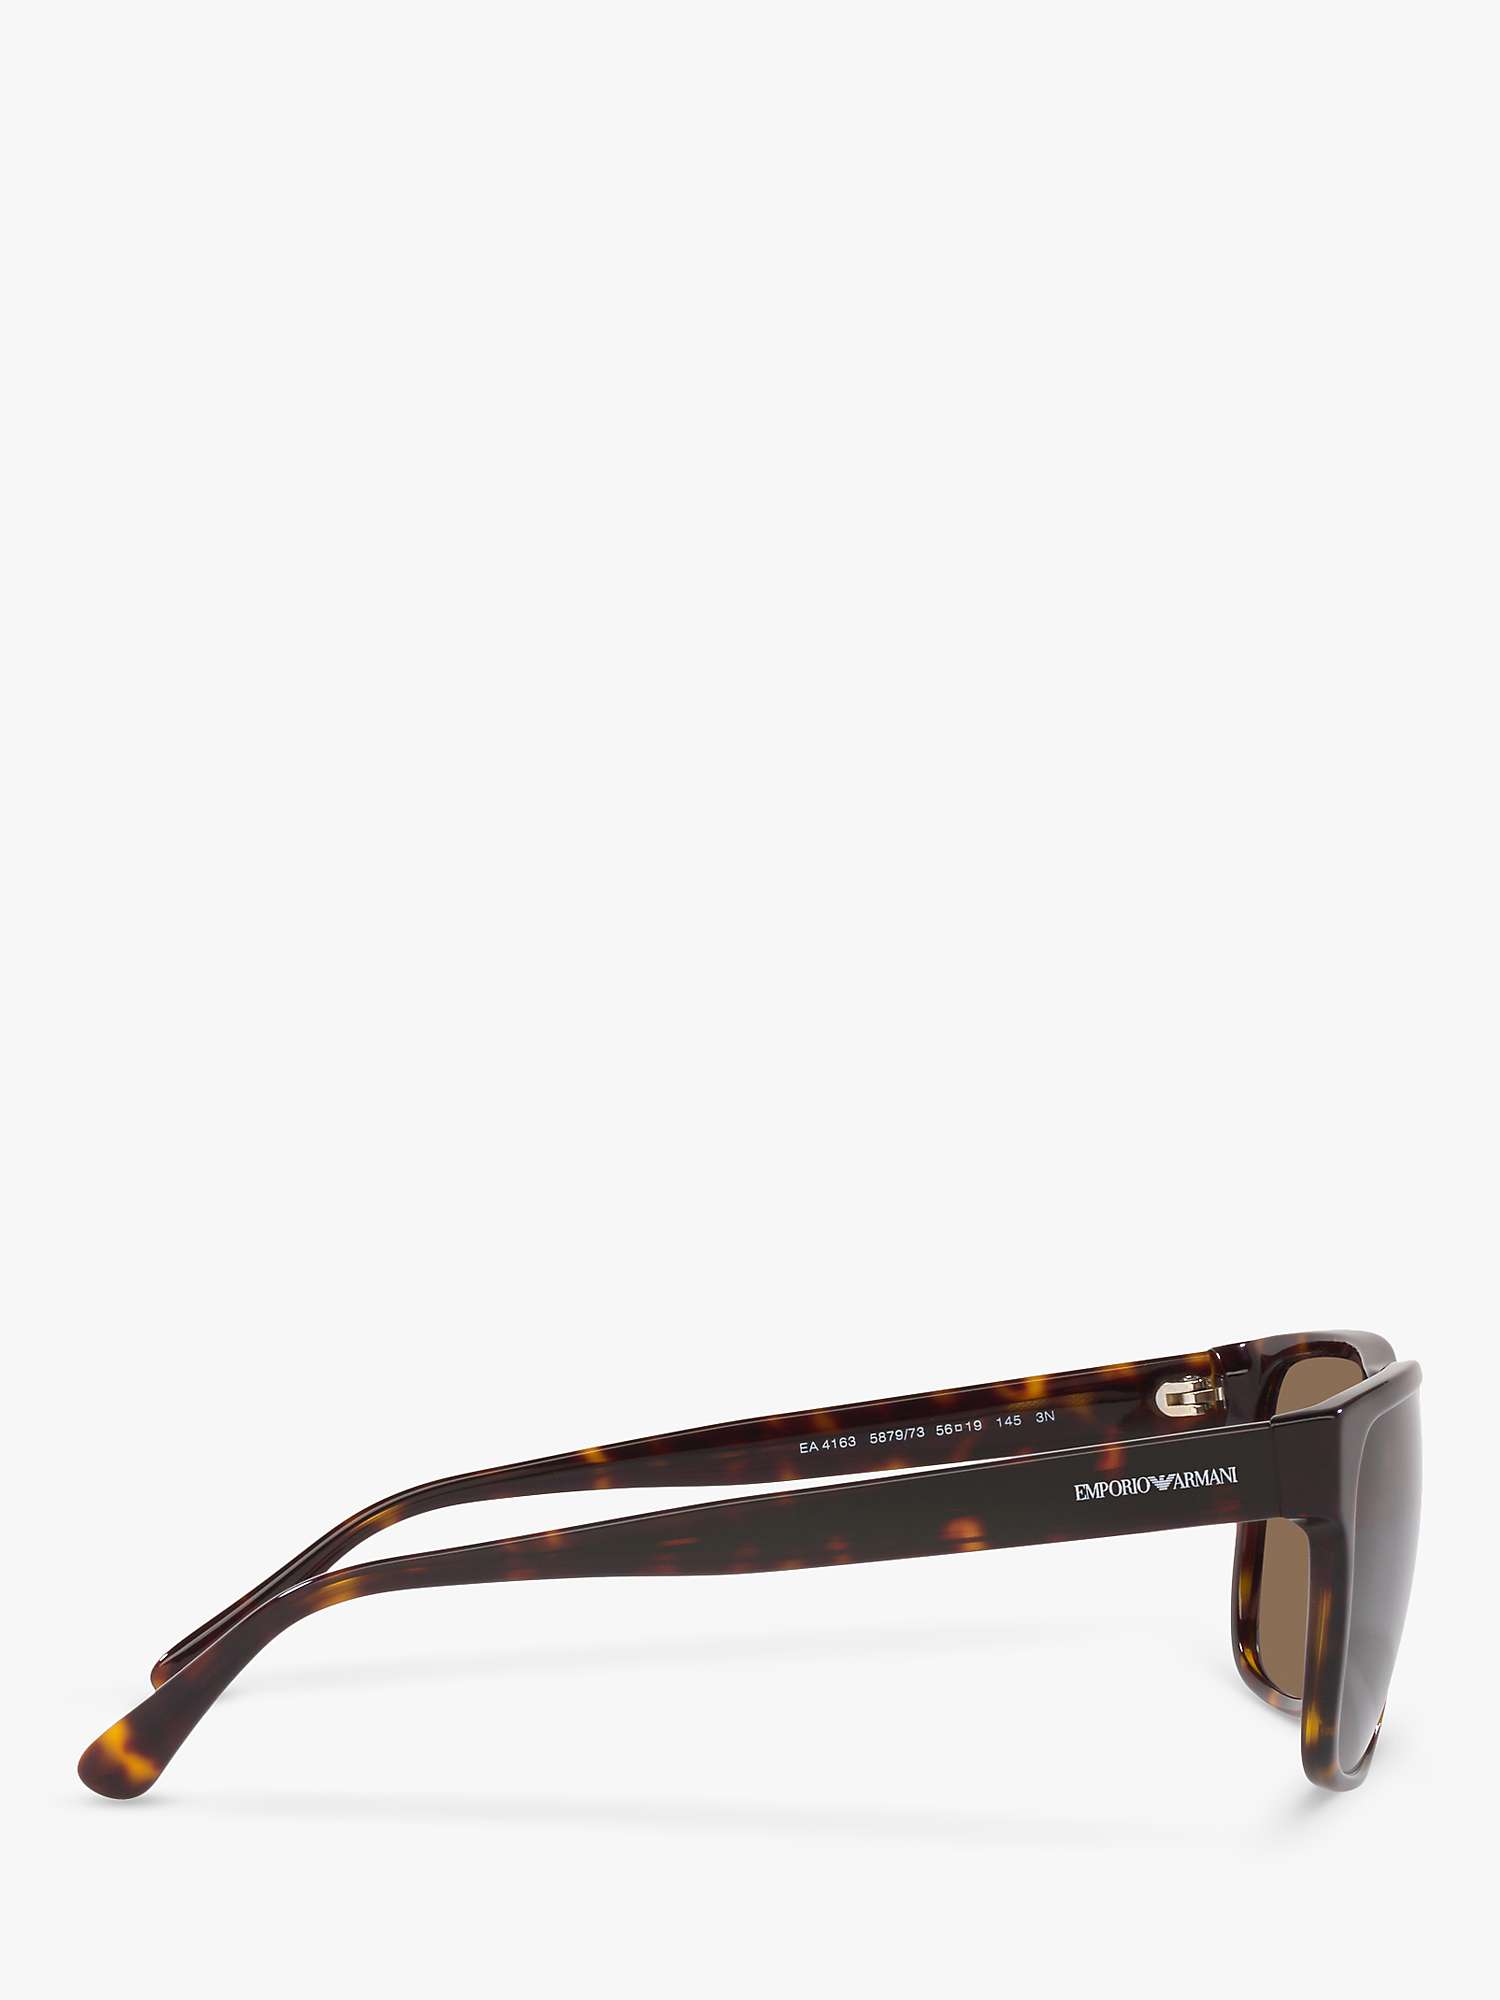 Buy Emporio Armani EA4163 Men's Square Sunglasses, Tortoise/Brown Gradient Online at johnlewis.com